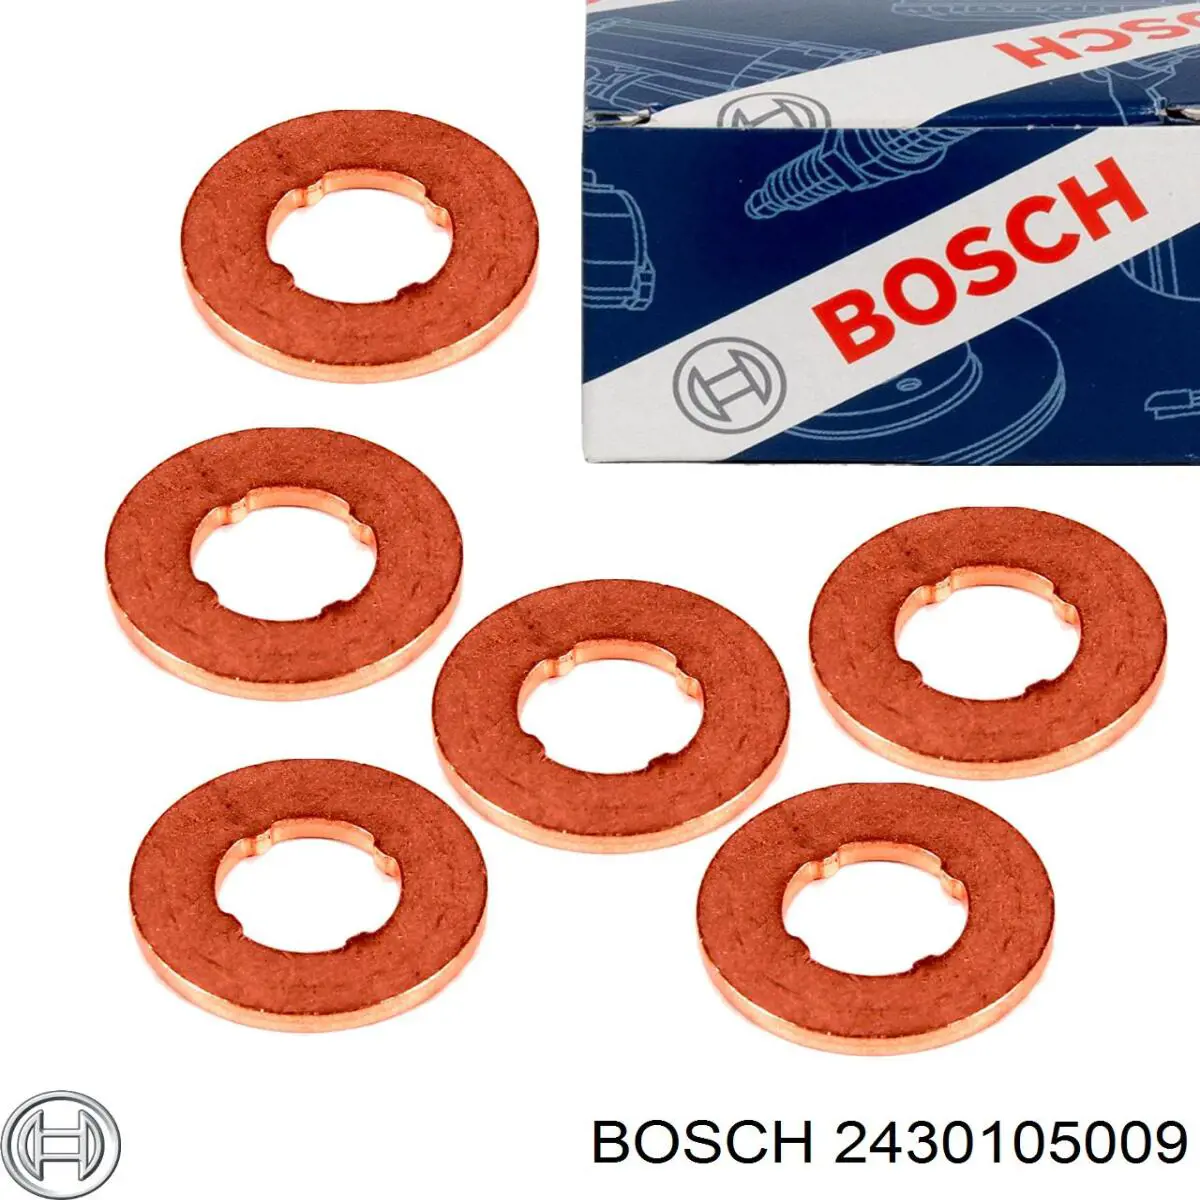 2430105009 Bosch кільце форсунки інжектора, посадочне